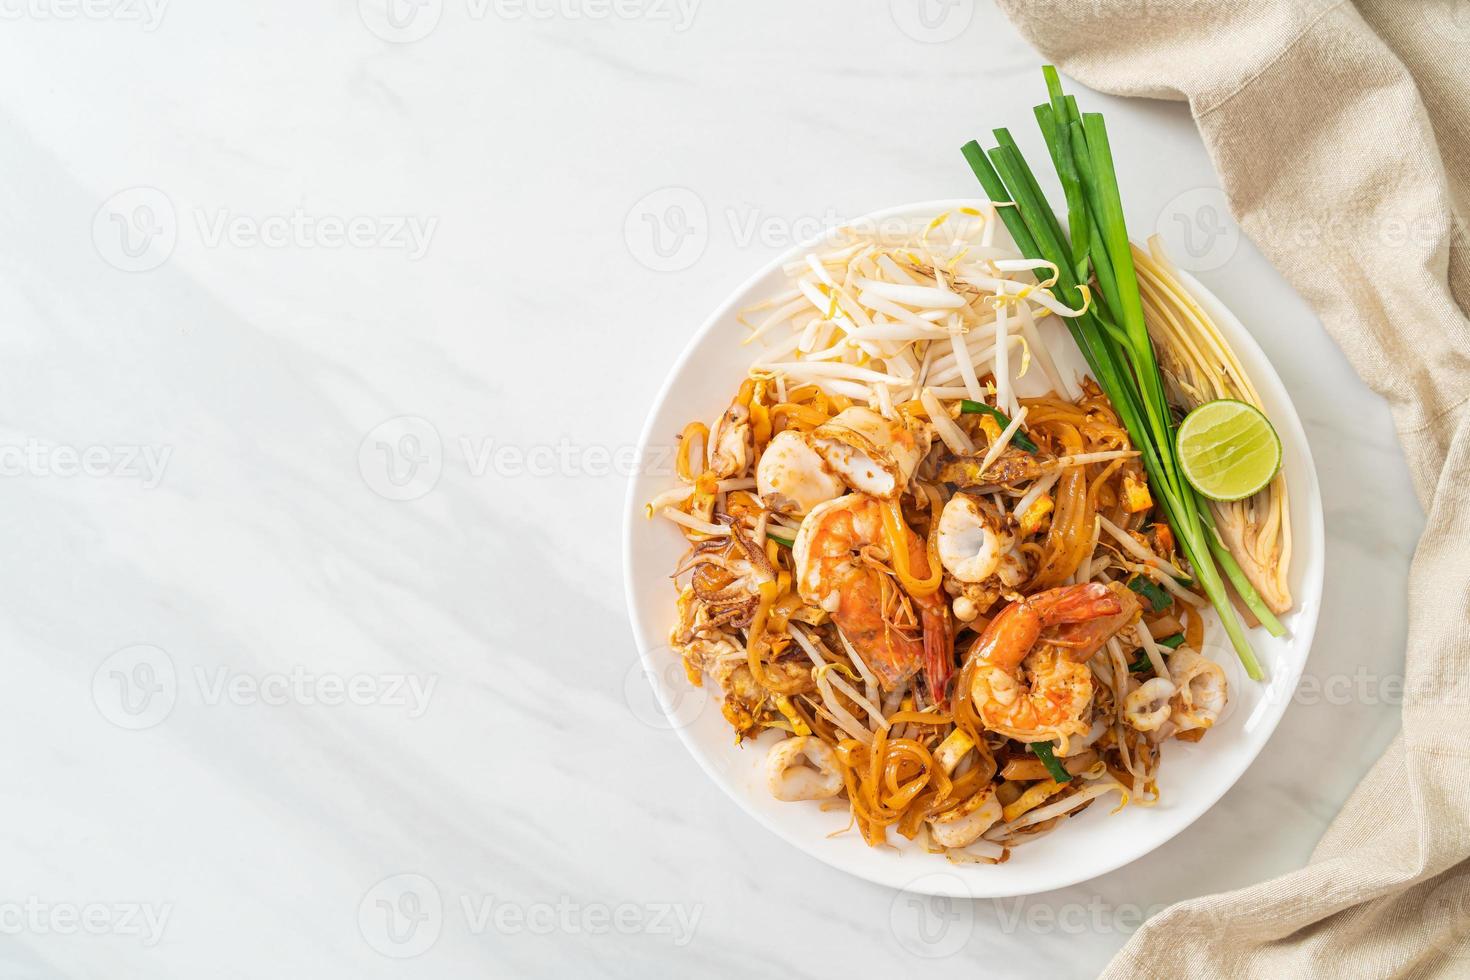 frutti di mare pad thai - Tagliatelle saltate in padella con gamberi, calamari o polpo e tofu foto